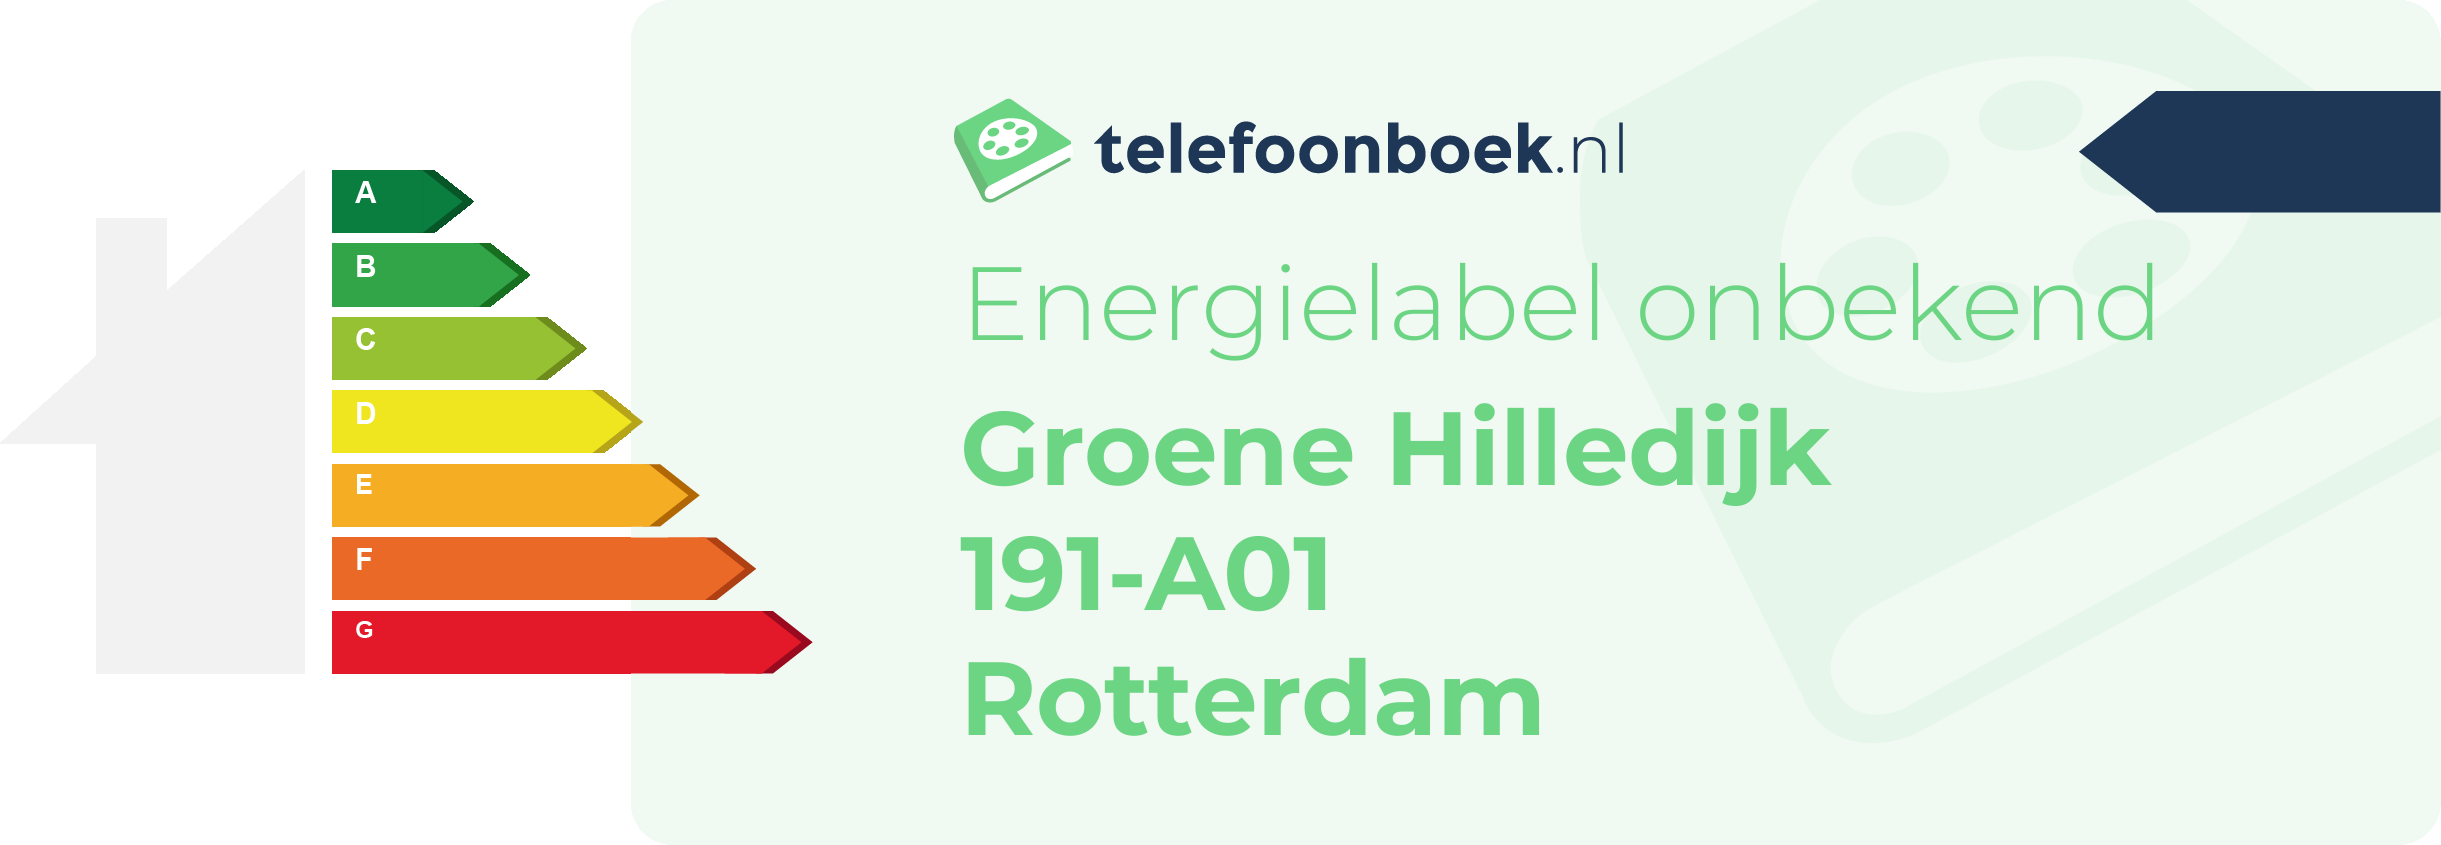 Energielabel Groene Hilledijk 191-A01 Rotterdam